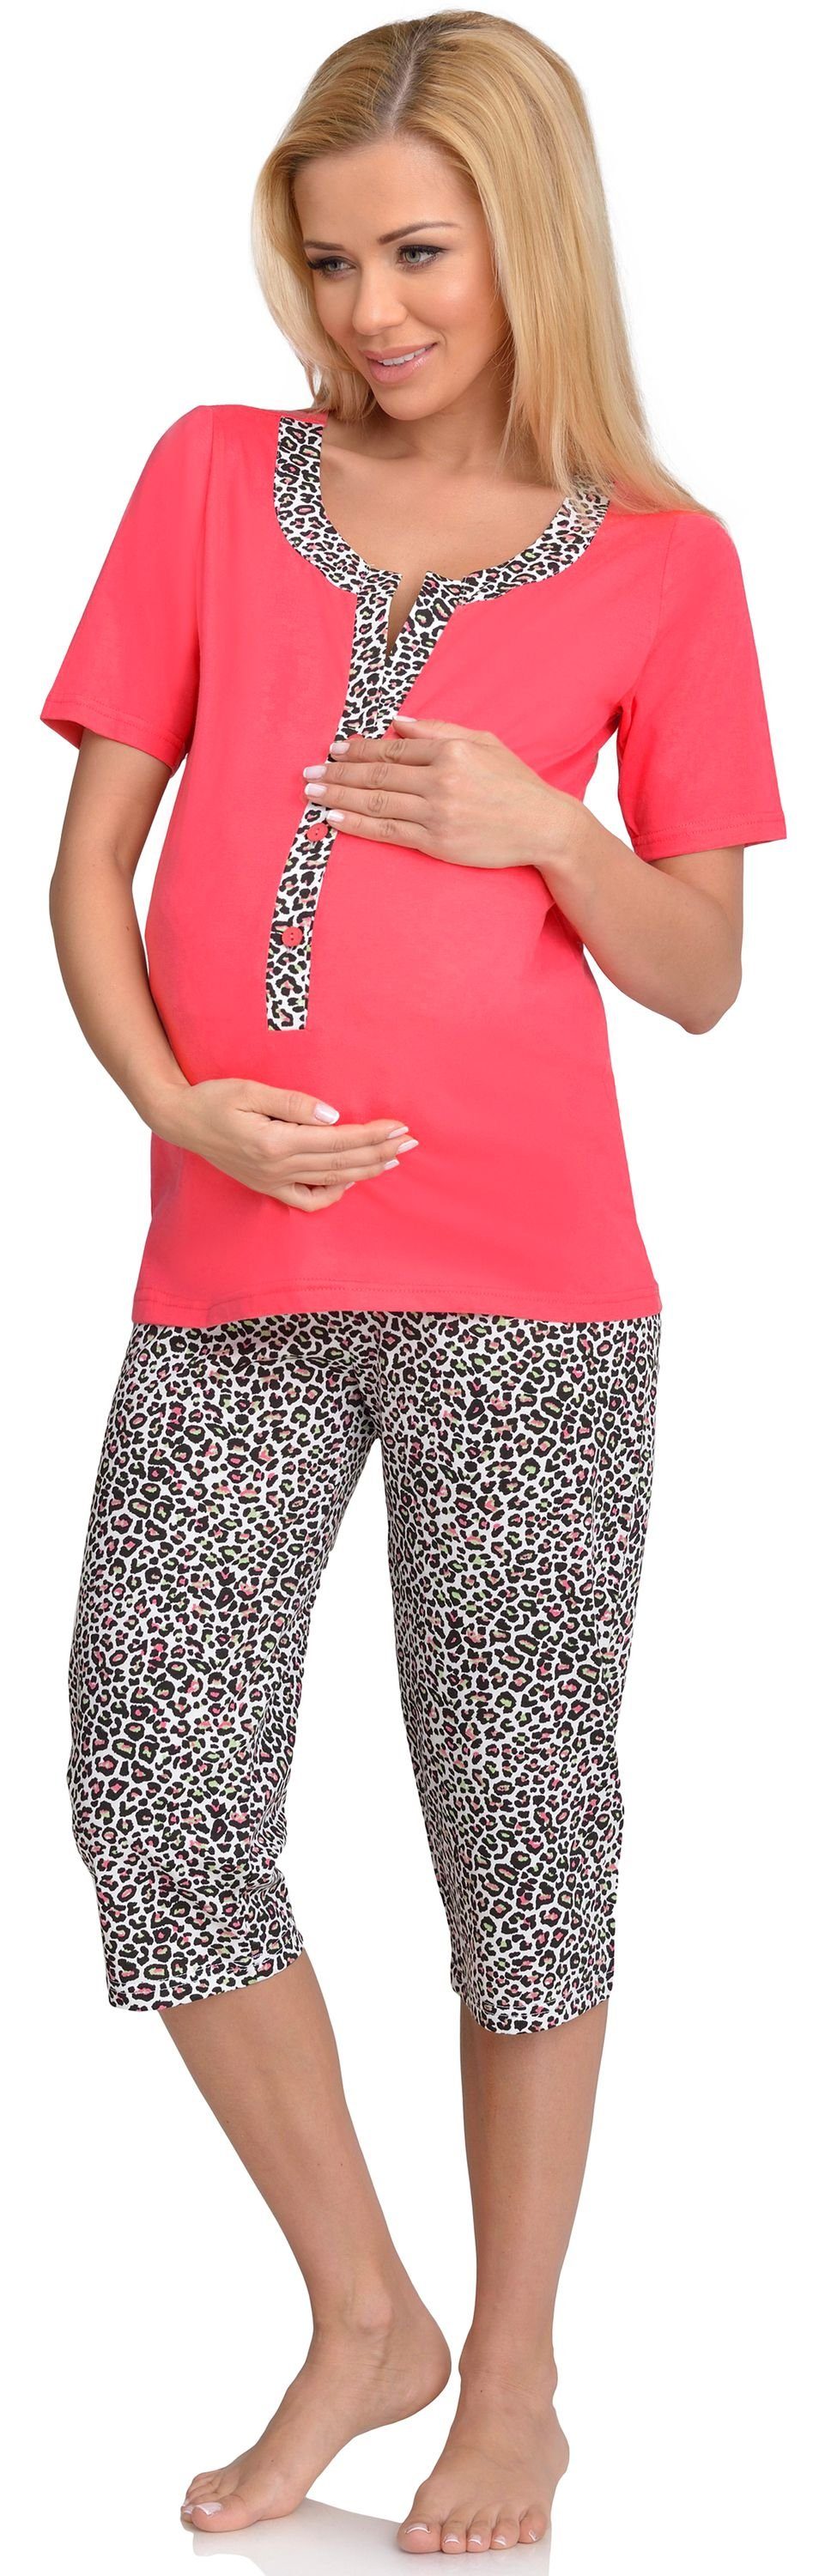 Damen Coral Stillpyjama Mammy H2L2N2 Be Umstandspyjama Schlafanzug